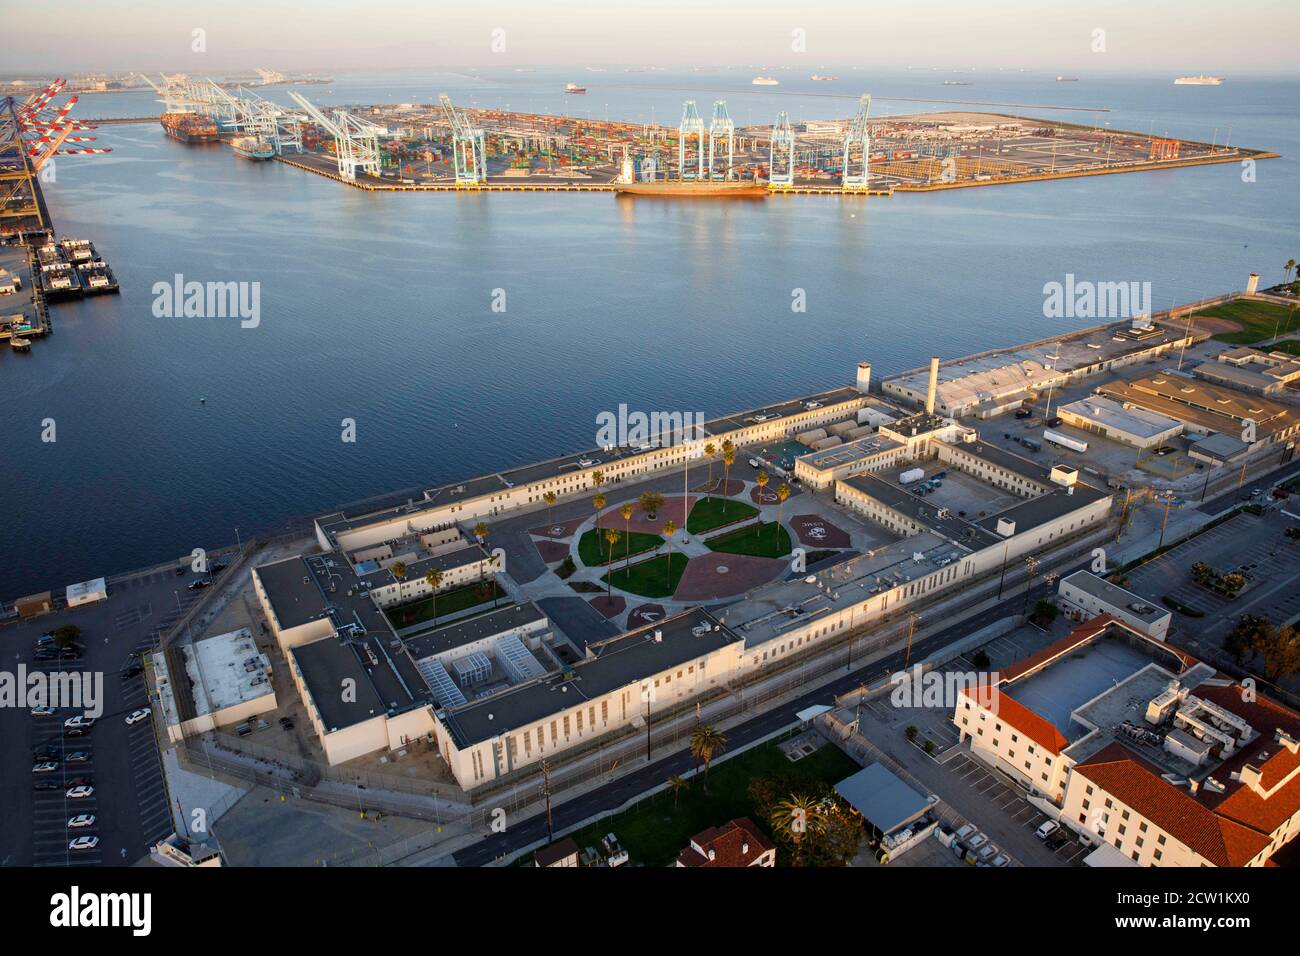 Los Angeles, Californie, États-Unis. 1er mai 2020. La prison de terminal  Island de l'Institut correctionnel fédéral (FCI) se trouve près du port de  Los Angeles dans cette photographie aérienne prise au-dessus de